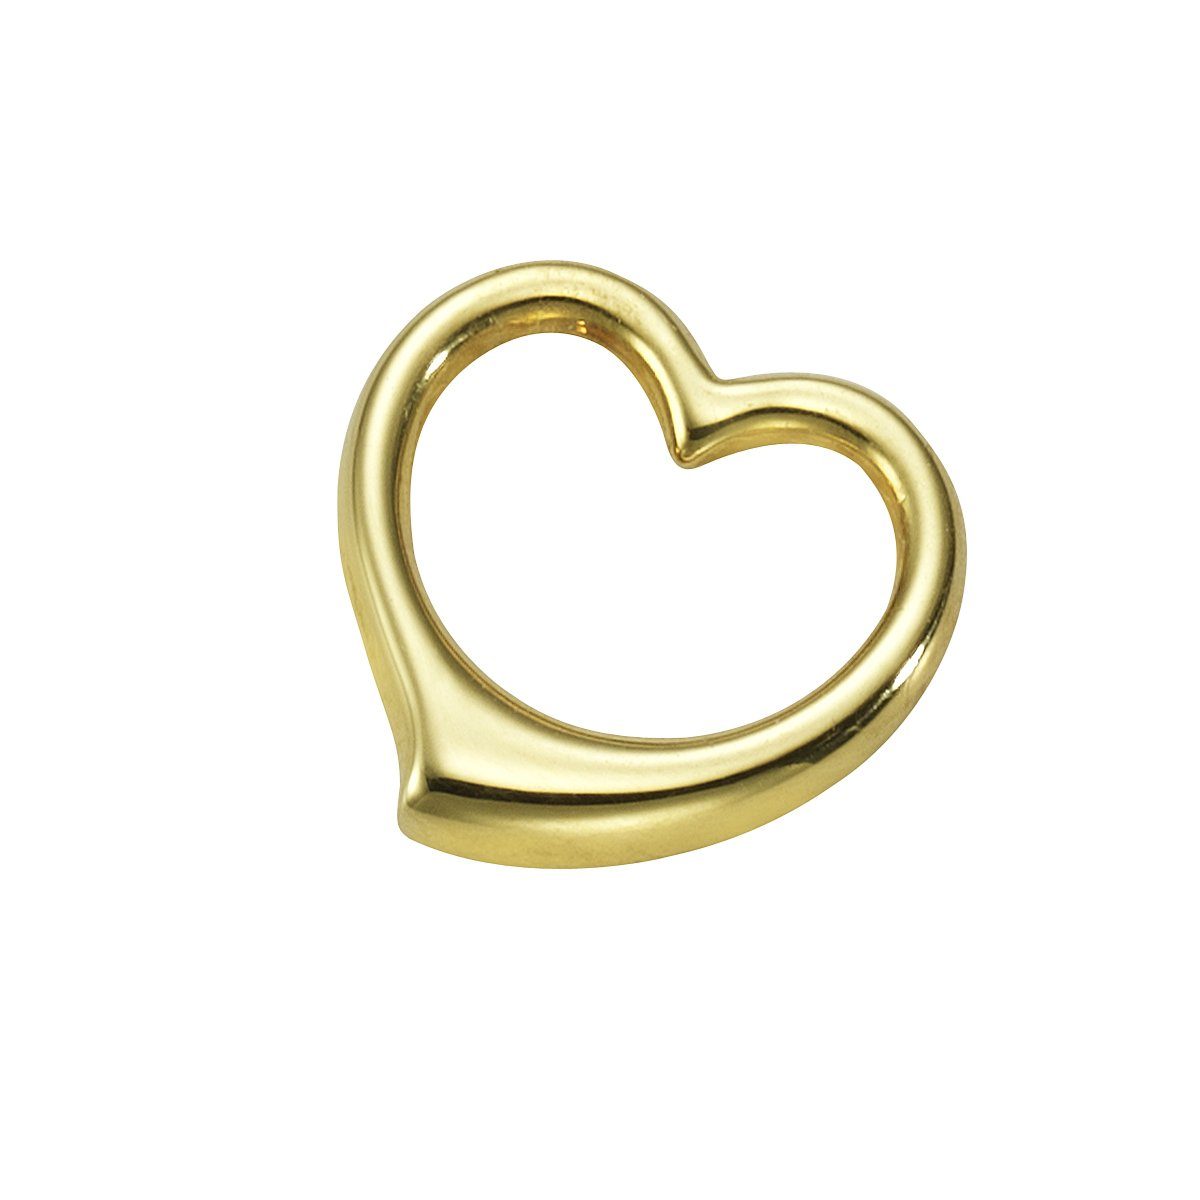 Vivance Kettenanhänger 333 Gold Motiv Herz, Schönes Geschenk für Freundin  oder Partnerin | Kettenanhänger